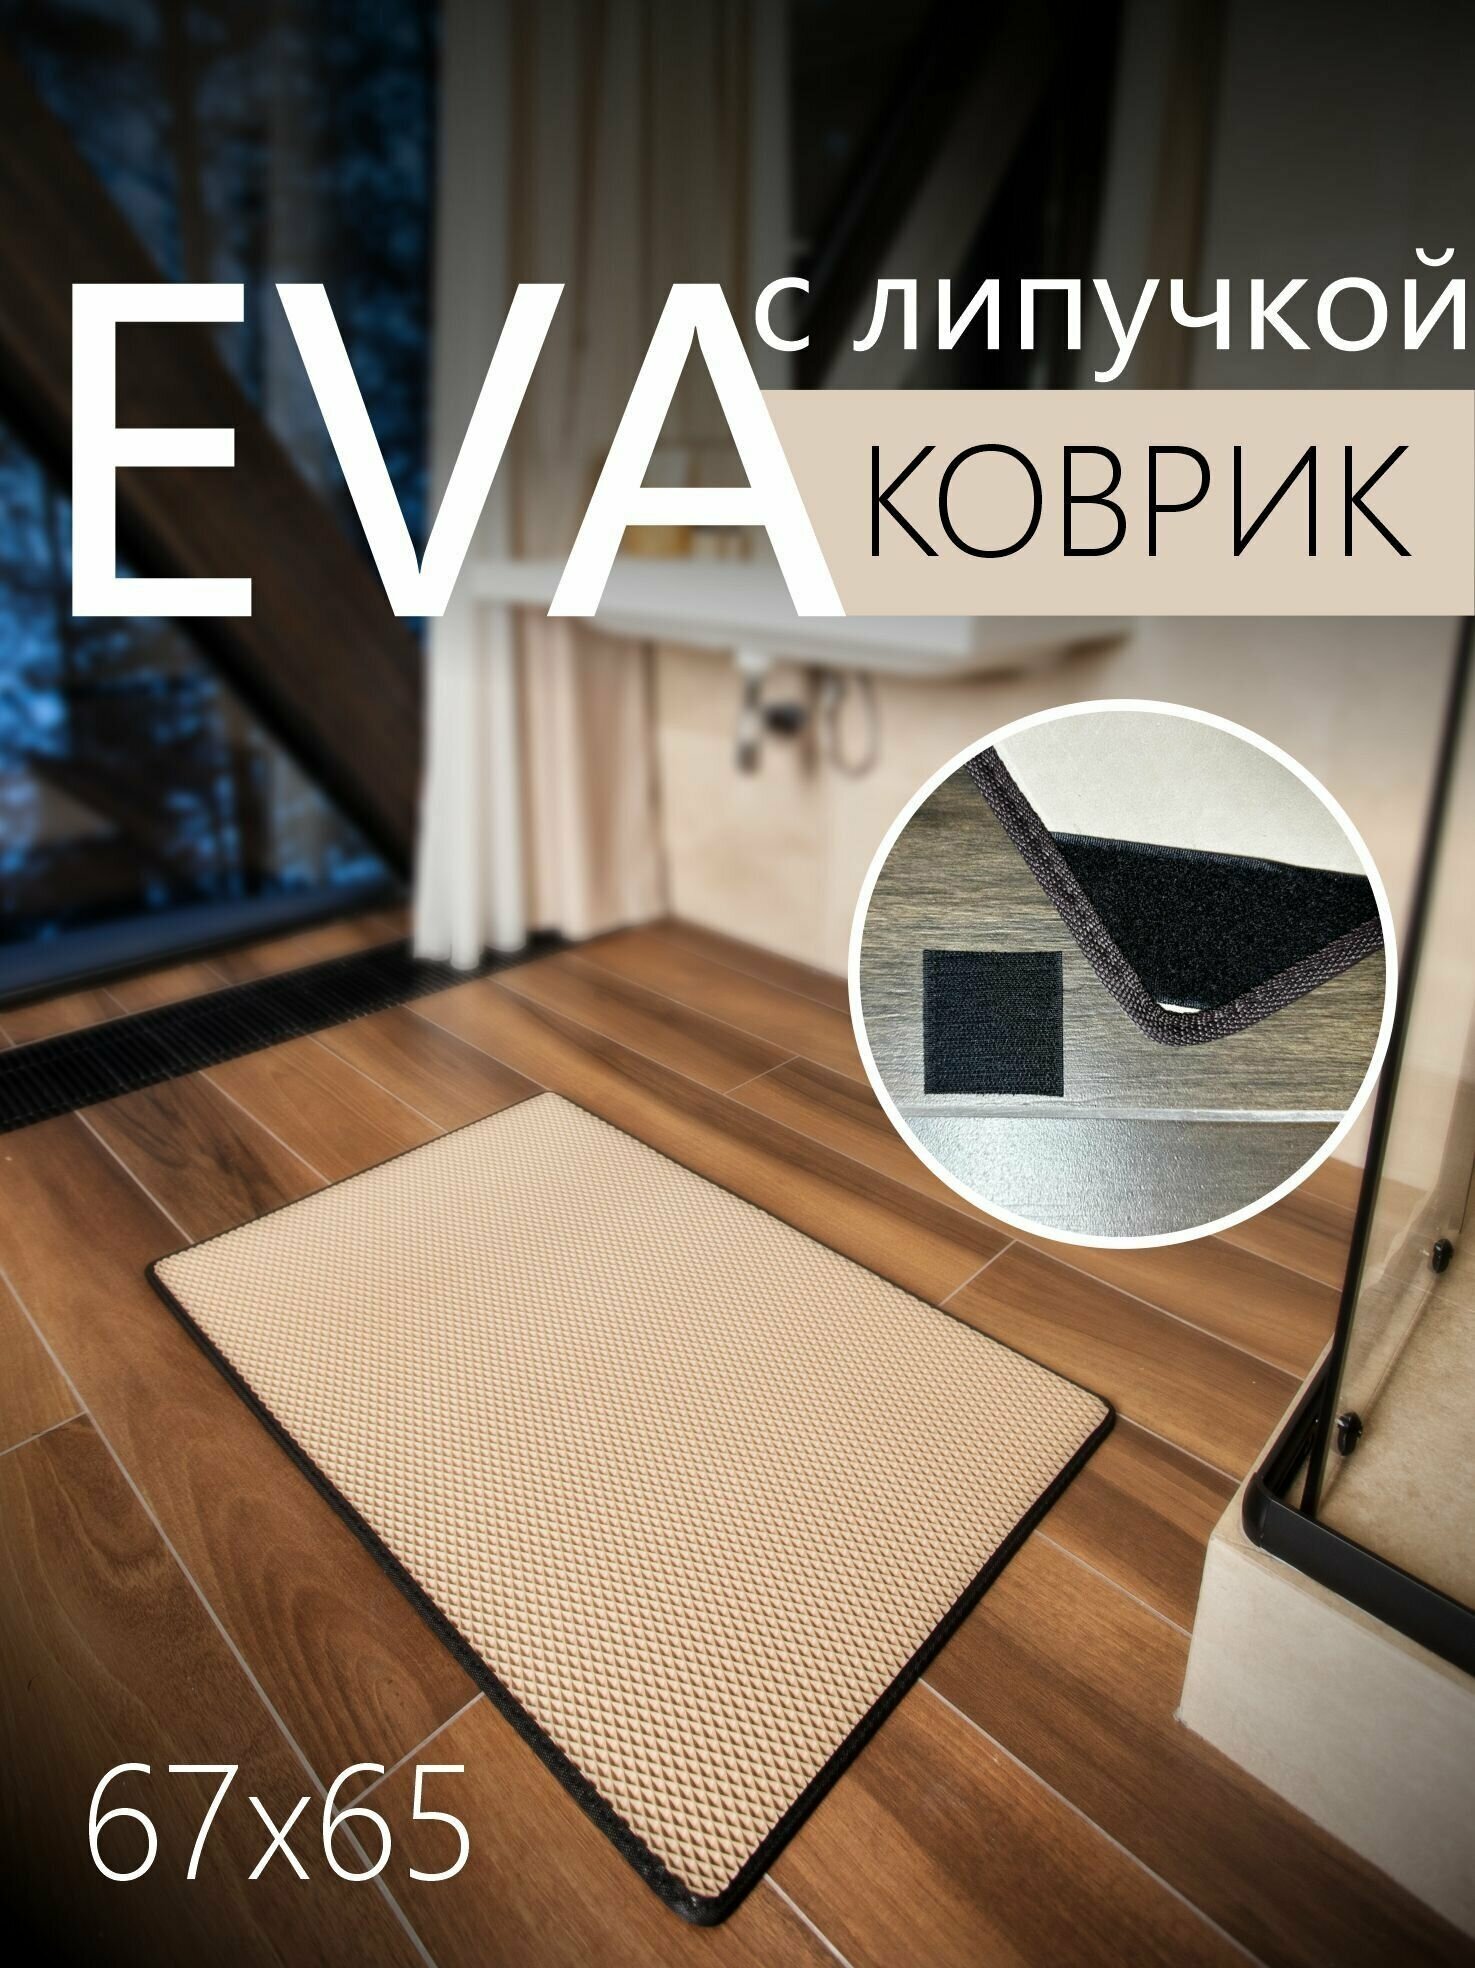 Коврик придверный противоскользящий EVA ЭВА универсальный 67х65 сантиметров. Липучки для фиксации. Ромб Бежевый с черной окантовкой